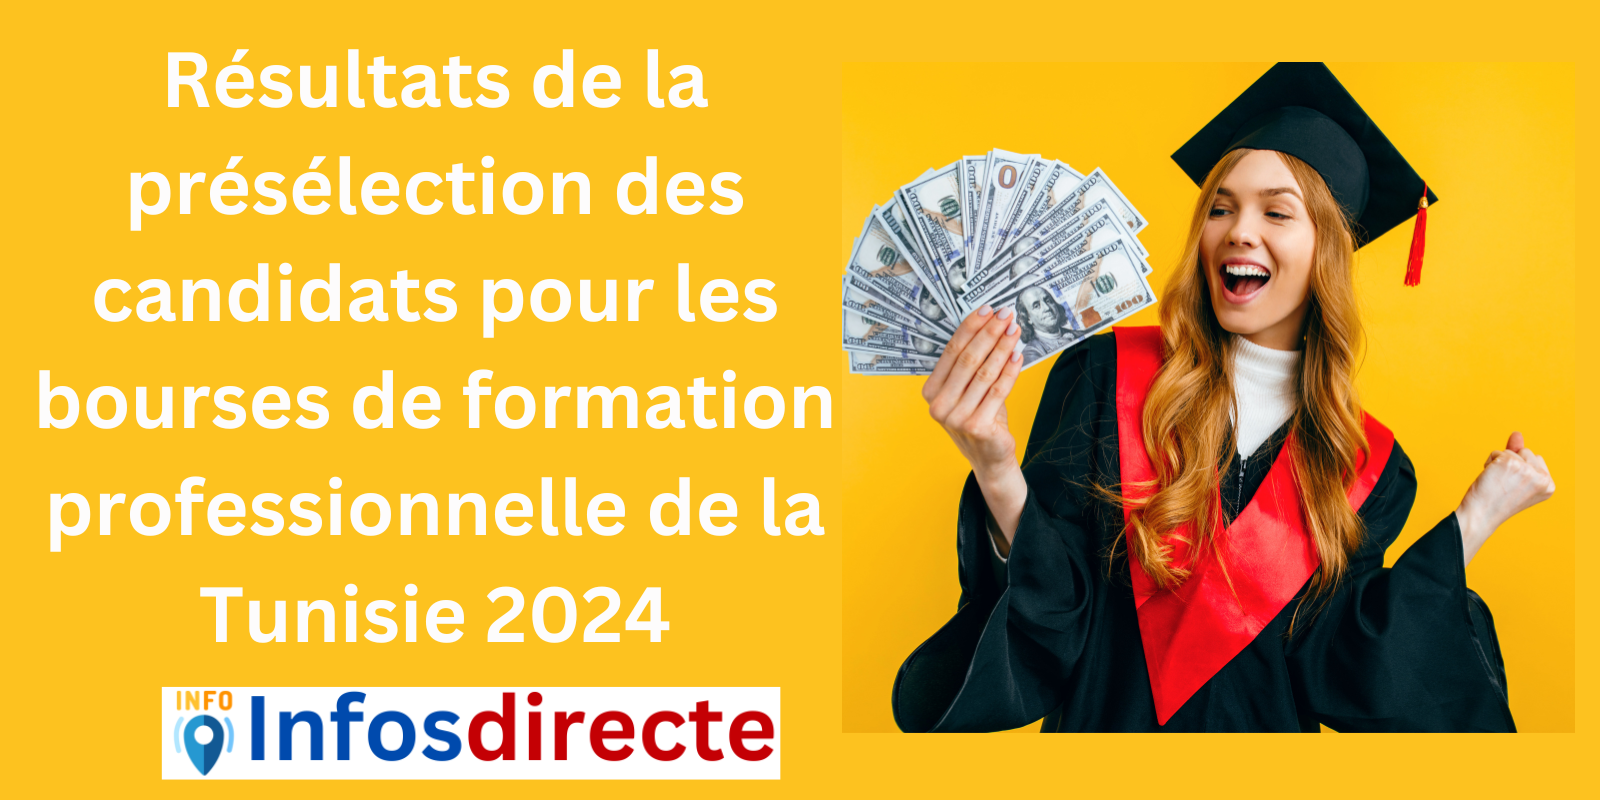 Résultats de la présélection des candidats pour les bourses de formation professionnelle de la Tunisie 2024